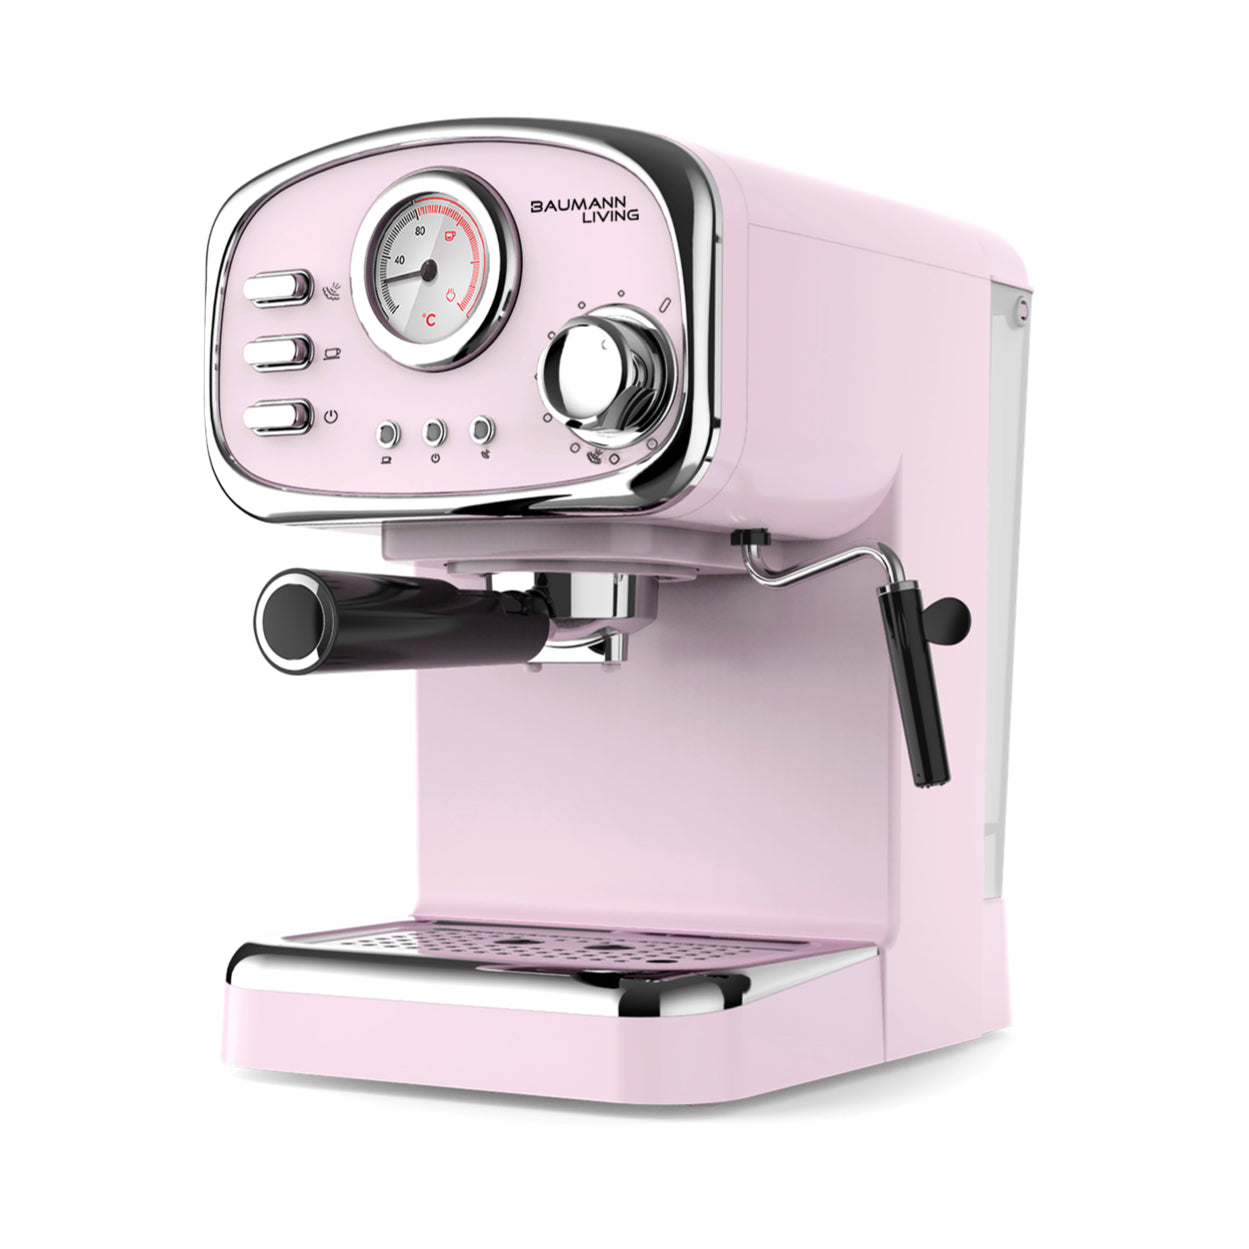 Retro Espresso Machine with Milk Frother – Baumann Living